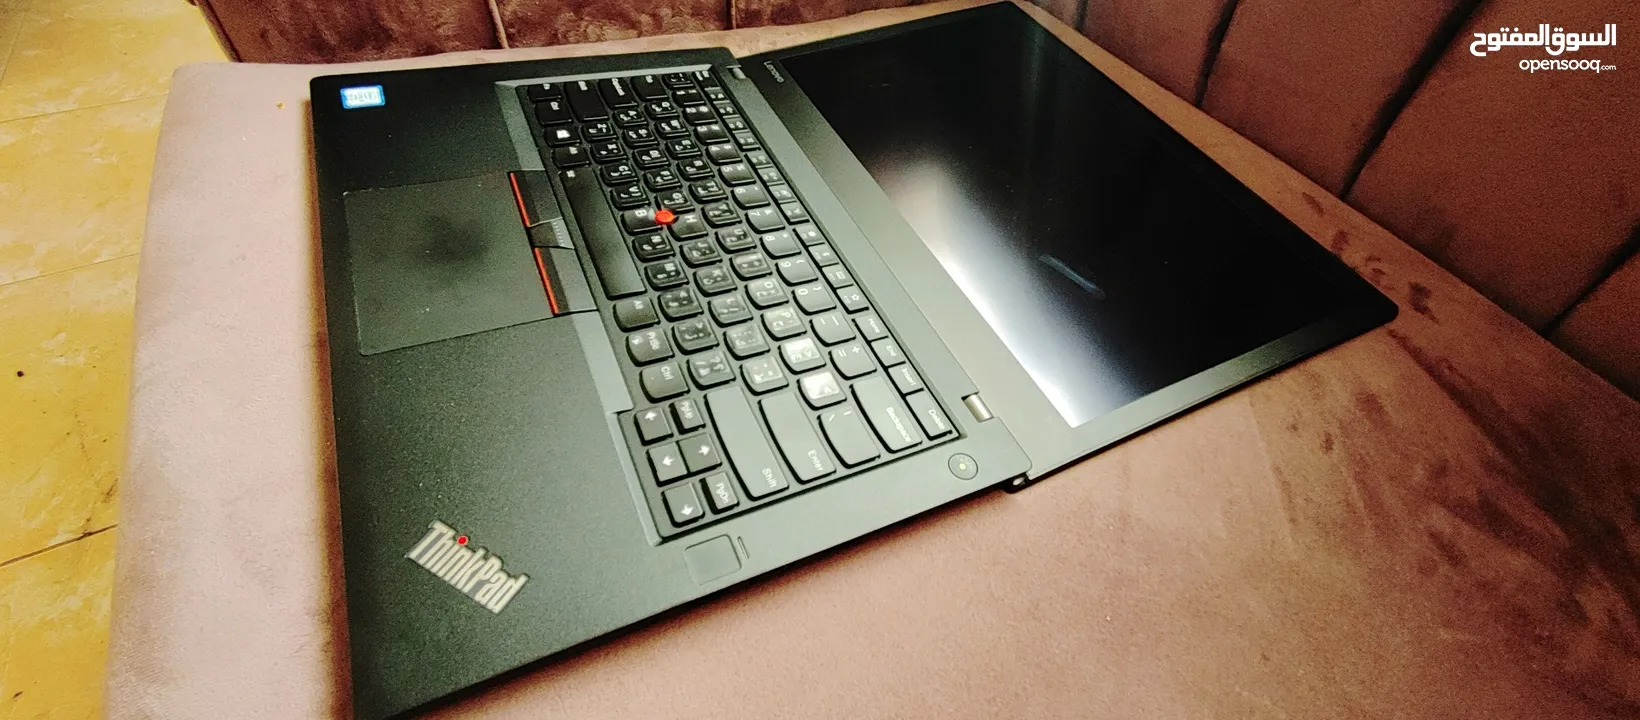 ThinkPad i7 vPro 16 GB LTE  لابتوب بزنس سريع